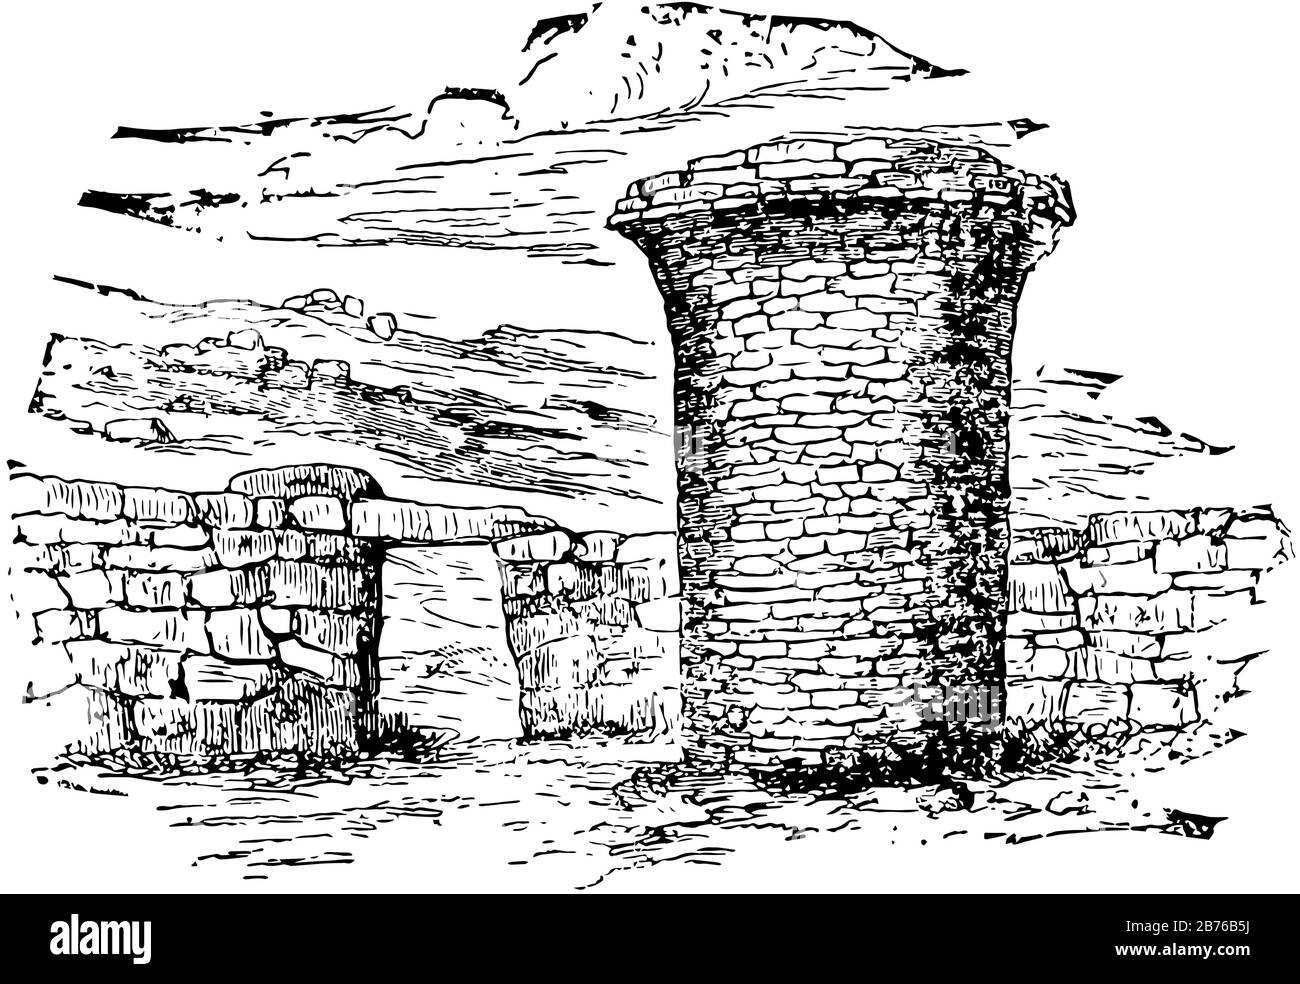 La Torre di sepoltura è l'Encyclopedia Britannica, terra o mare sono inaccettabili, struttura rialzata costruita, disegno di linea vintage o illustrazione di incisione. Illustrazione Vettoriale